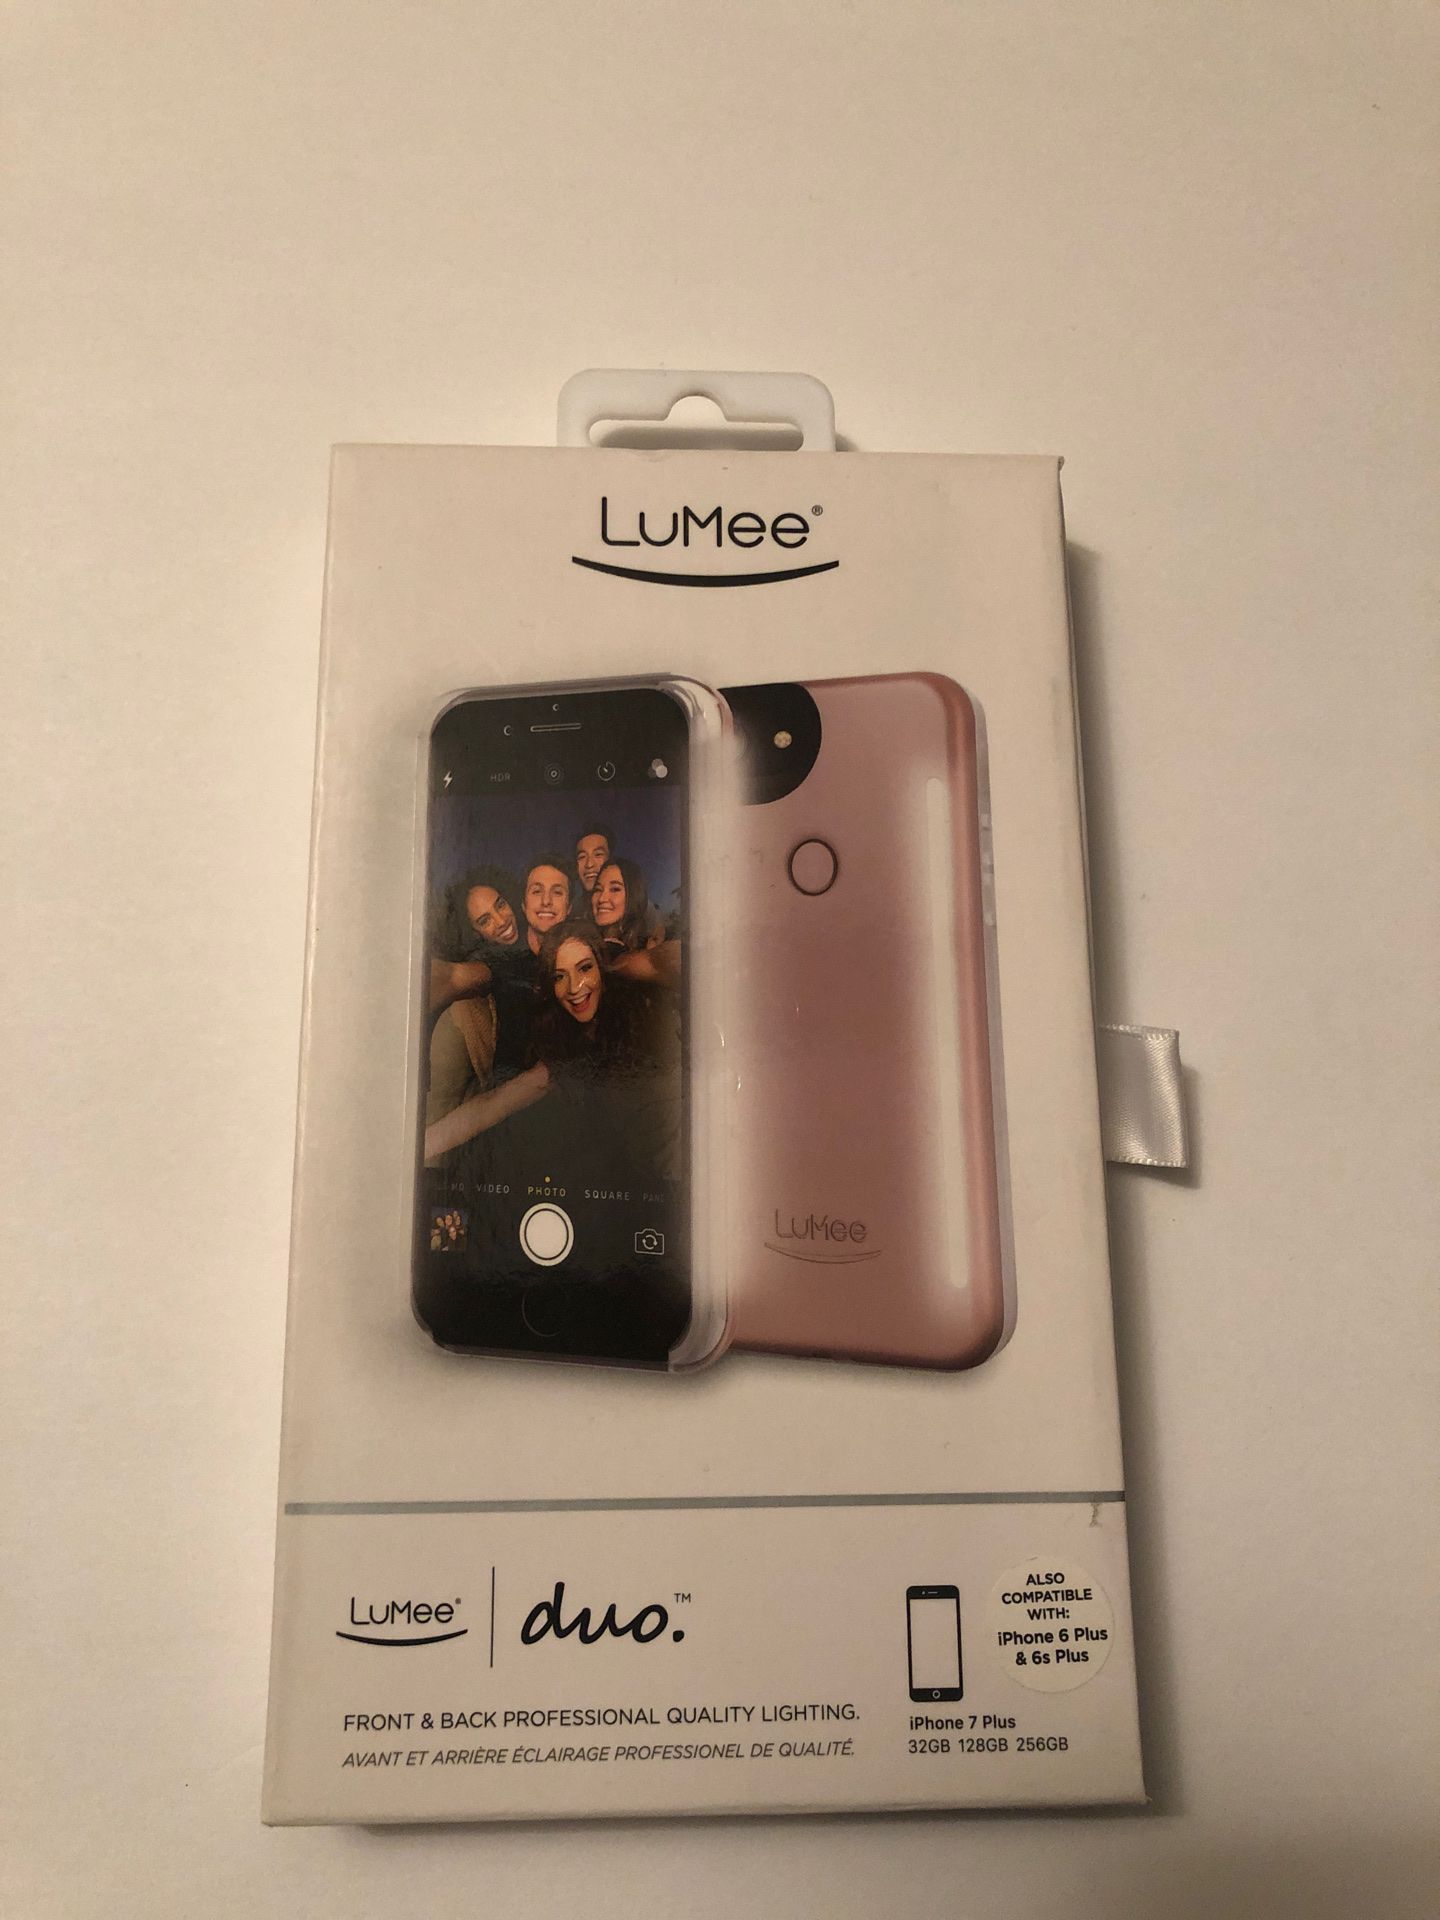 LuMee iPhone case